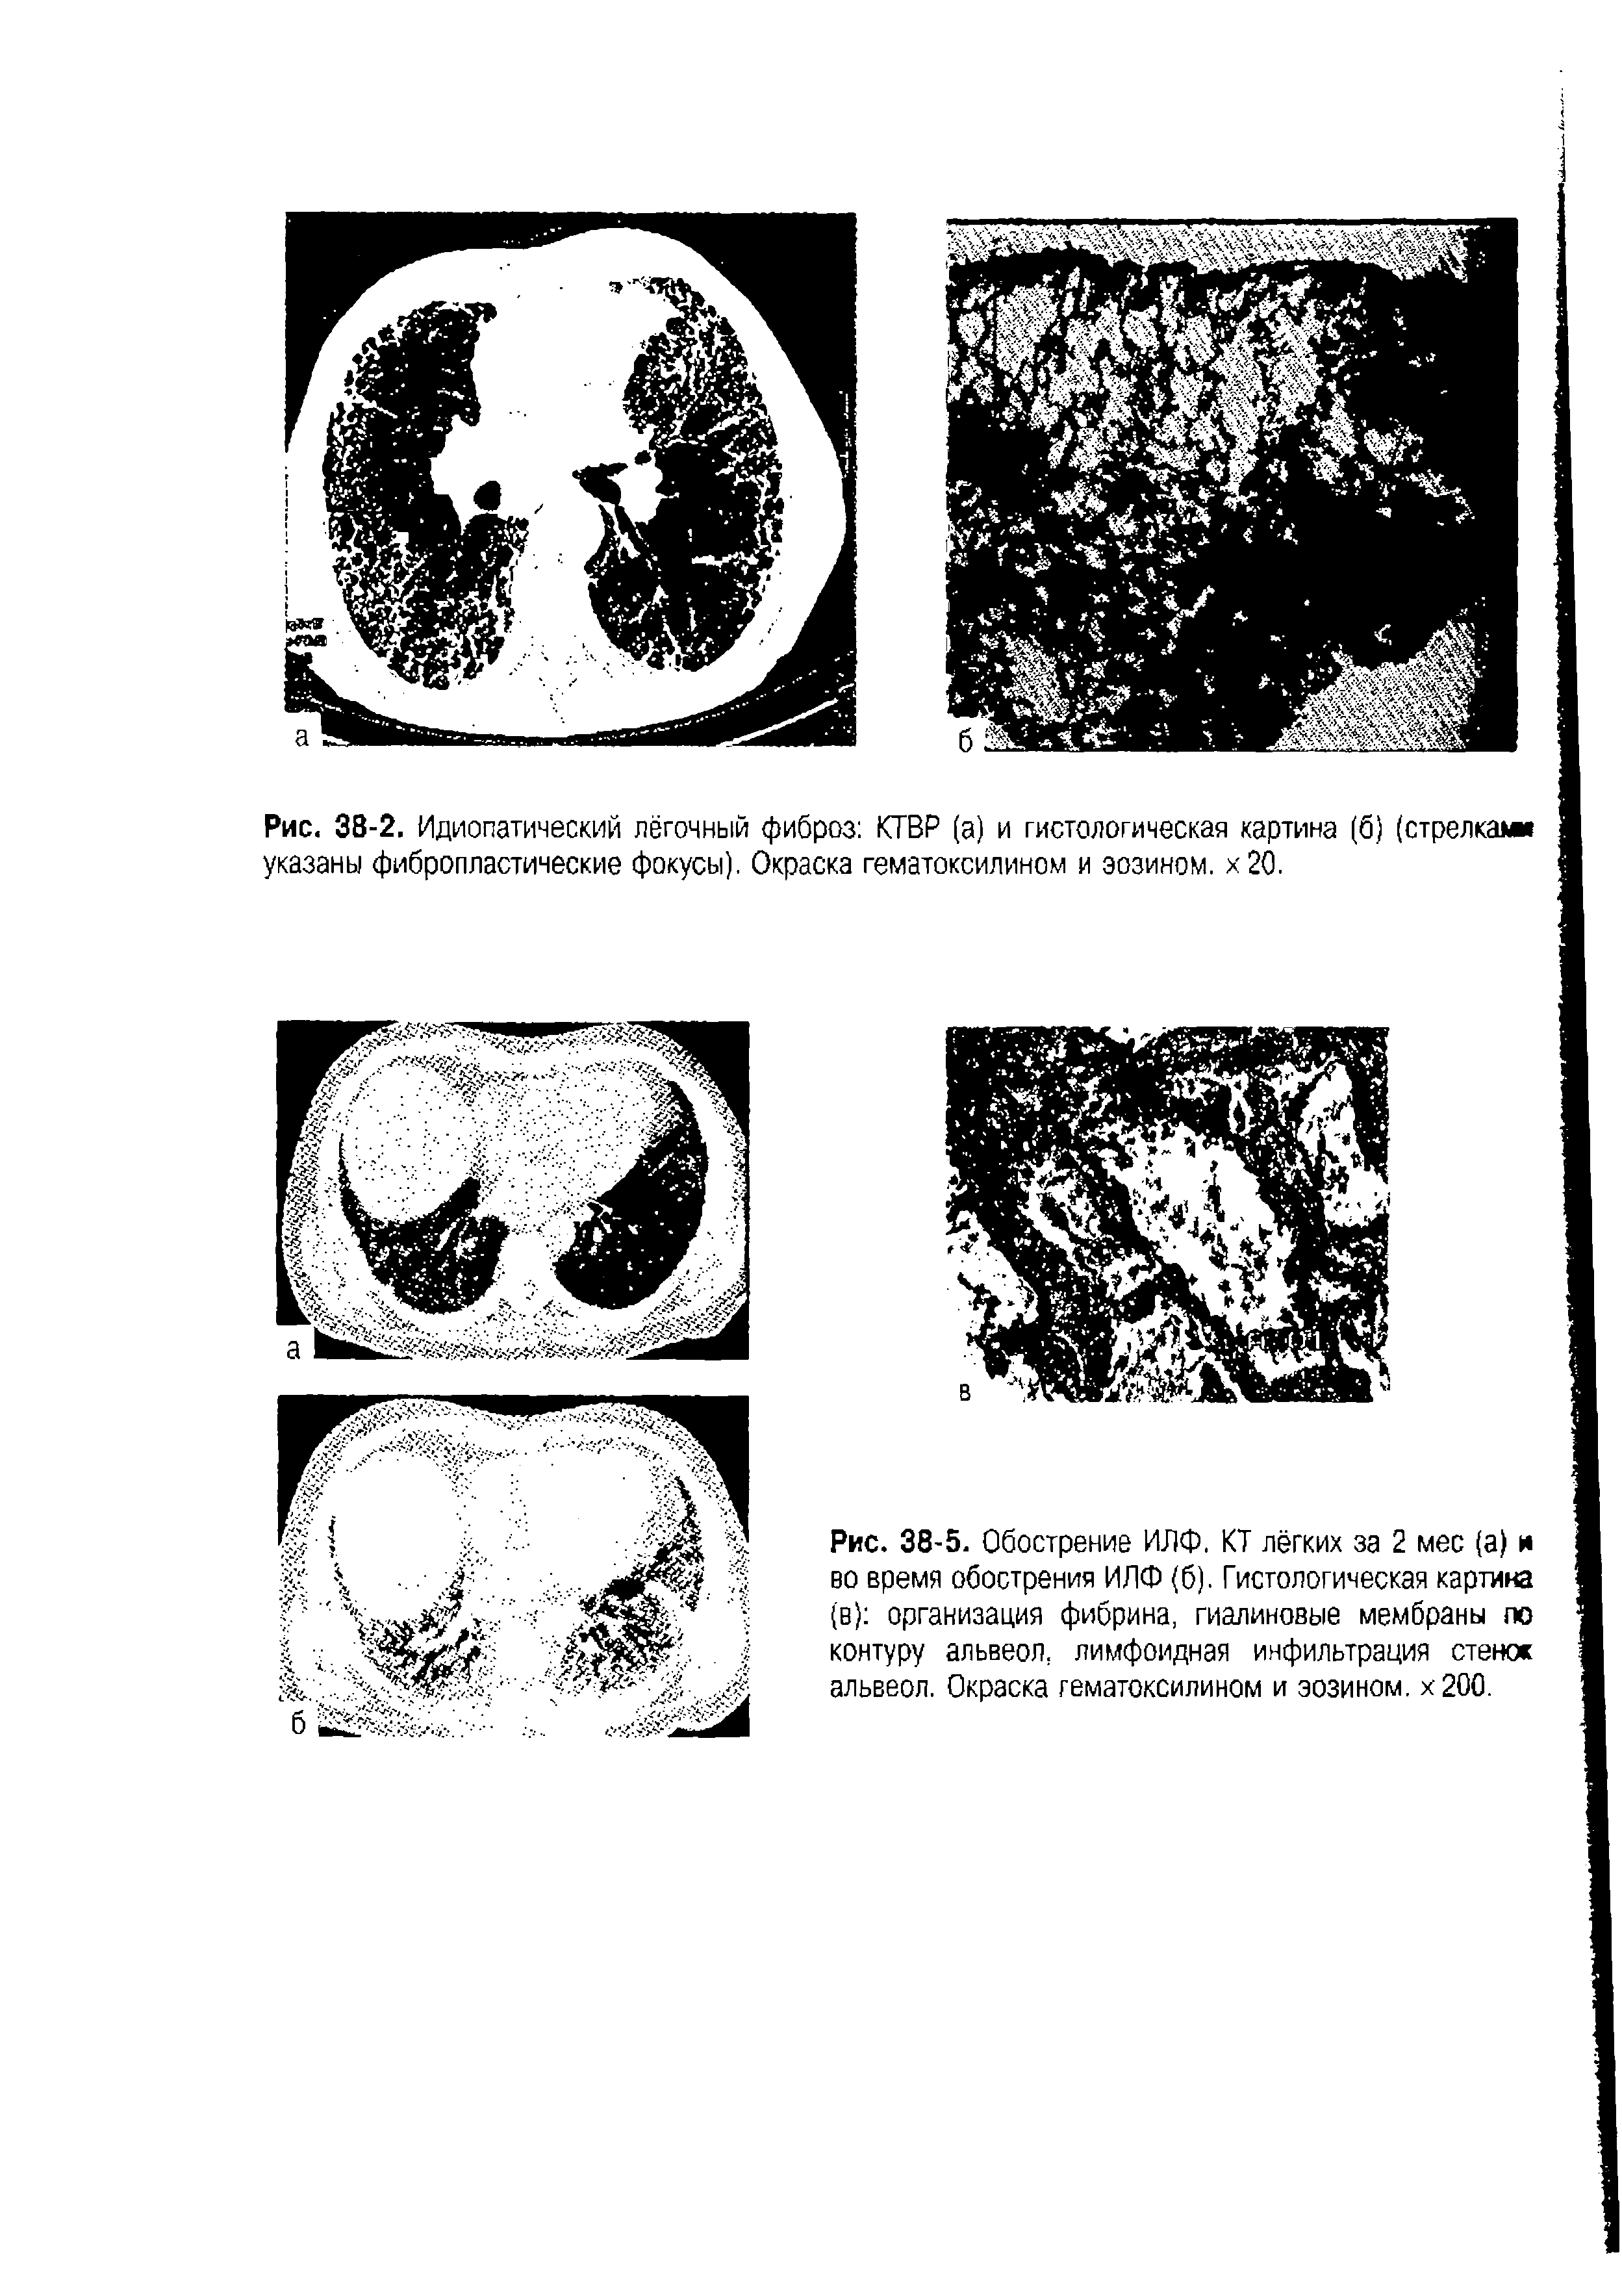 Рис. 38-5. Обострение ИЛФ. КТ лёгких за 2 мес (а) и во время обострения ИЛФ (б). Гистологическая картина (в) организация фибрина, гиалиновые мембраны по контуру альвеол, лимфоидная инфильтрация стенос альвеол. Окраска гематоксилином и эозином. х200.